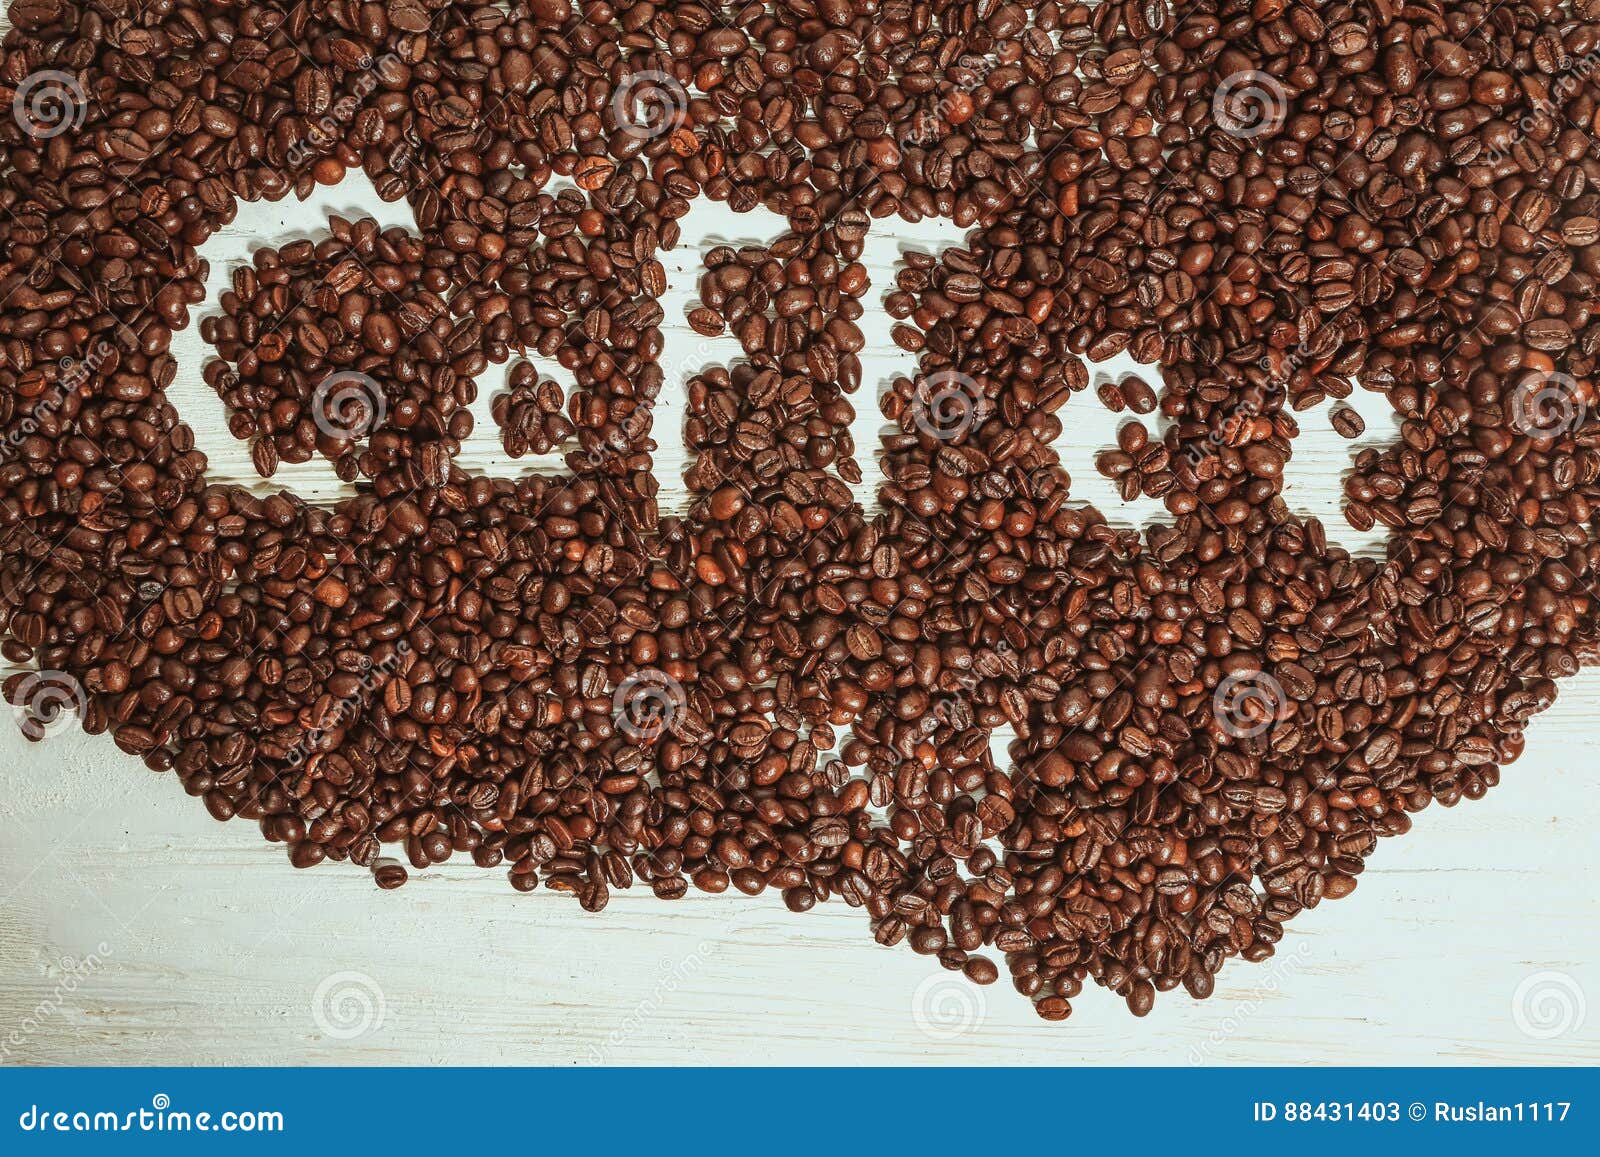 Молю кофе или мелю кофе